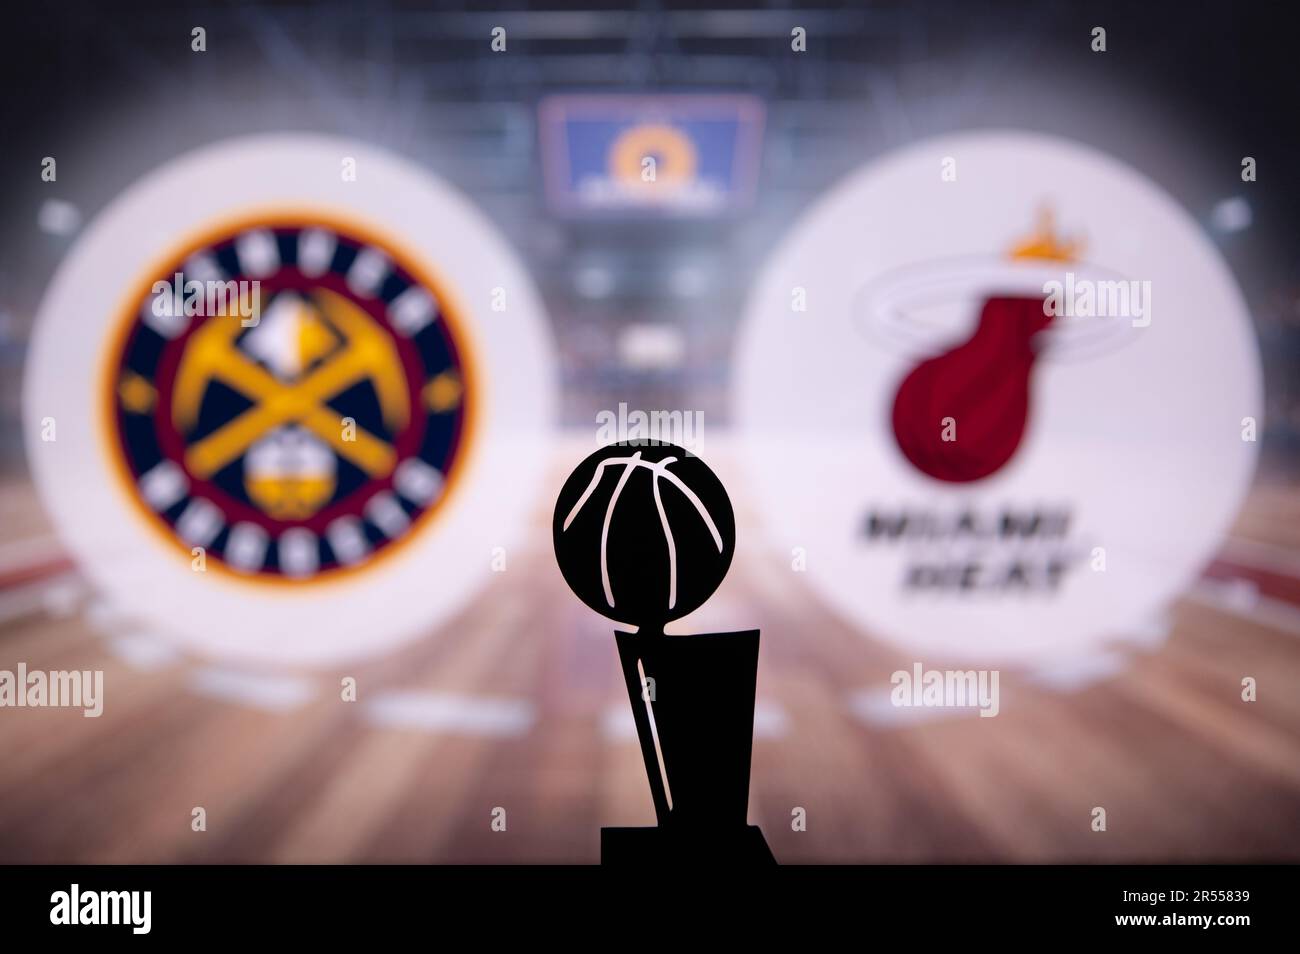 DENVER, EE.UU., 31 DE MAYO de 2023: Finales de la NBA Denver Nuggets vs Miami Heat. Silueta del Trofeo Larry O'Brien Championship para el ganador de la NBA Foto de stock